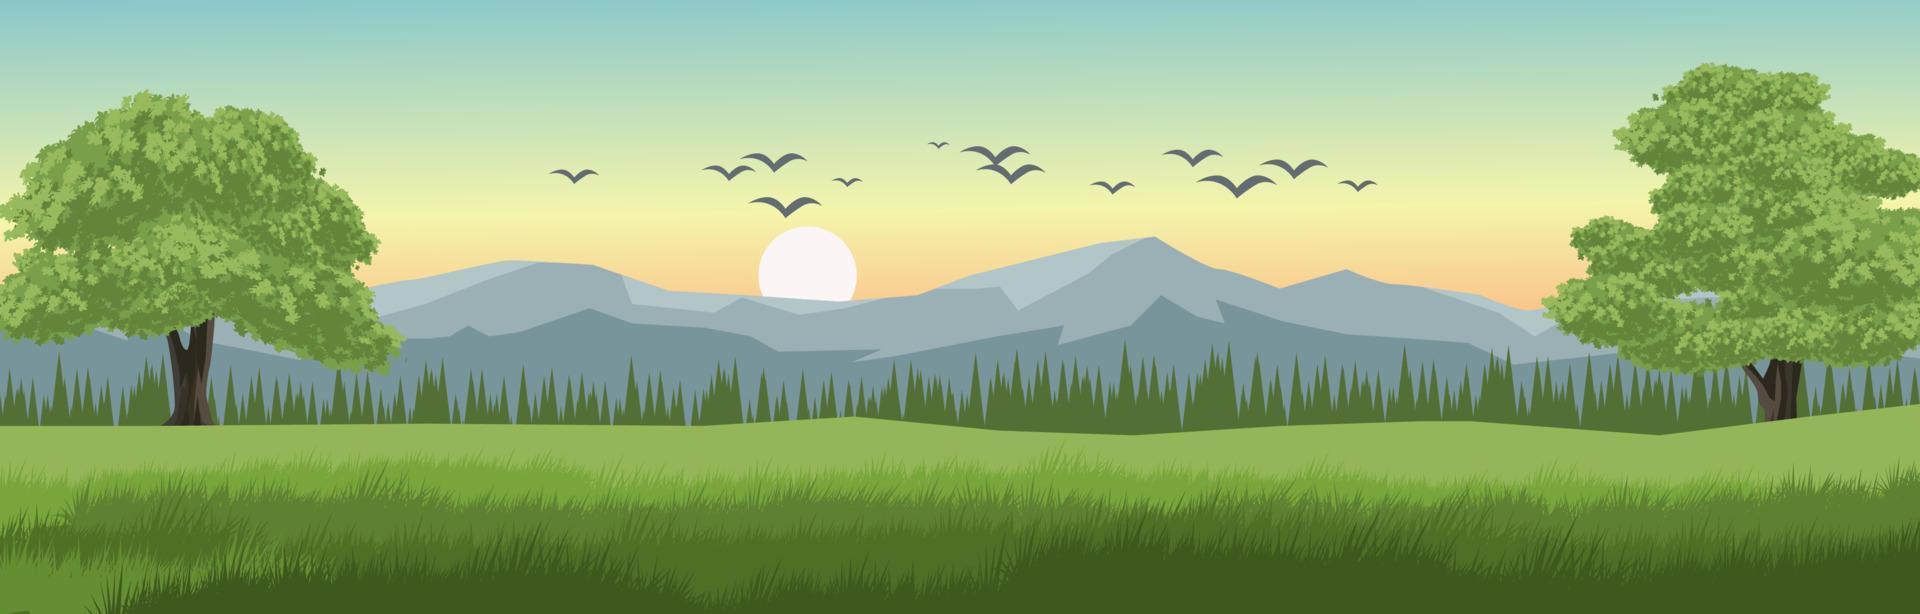 Vektor Morgen Landschaft Illustration mit Vögel